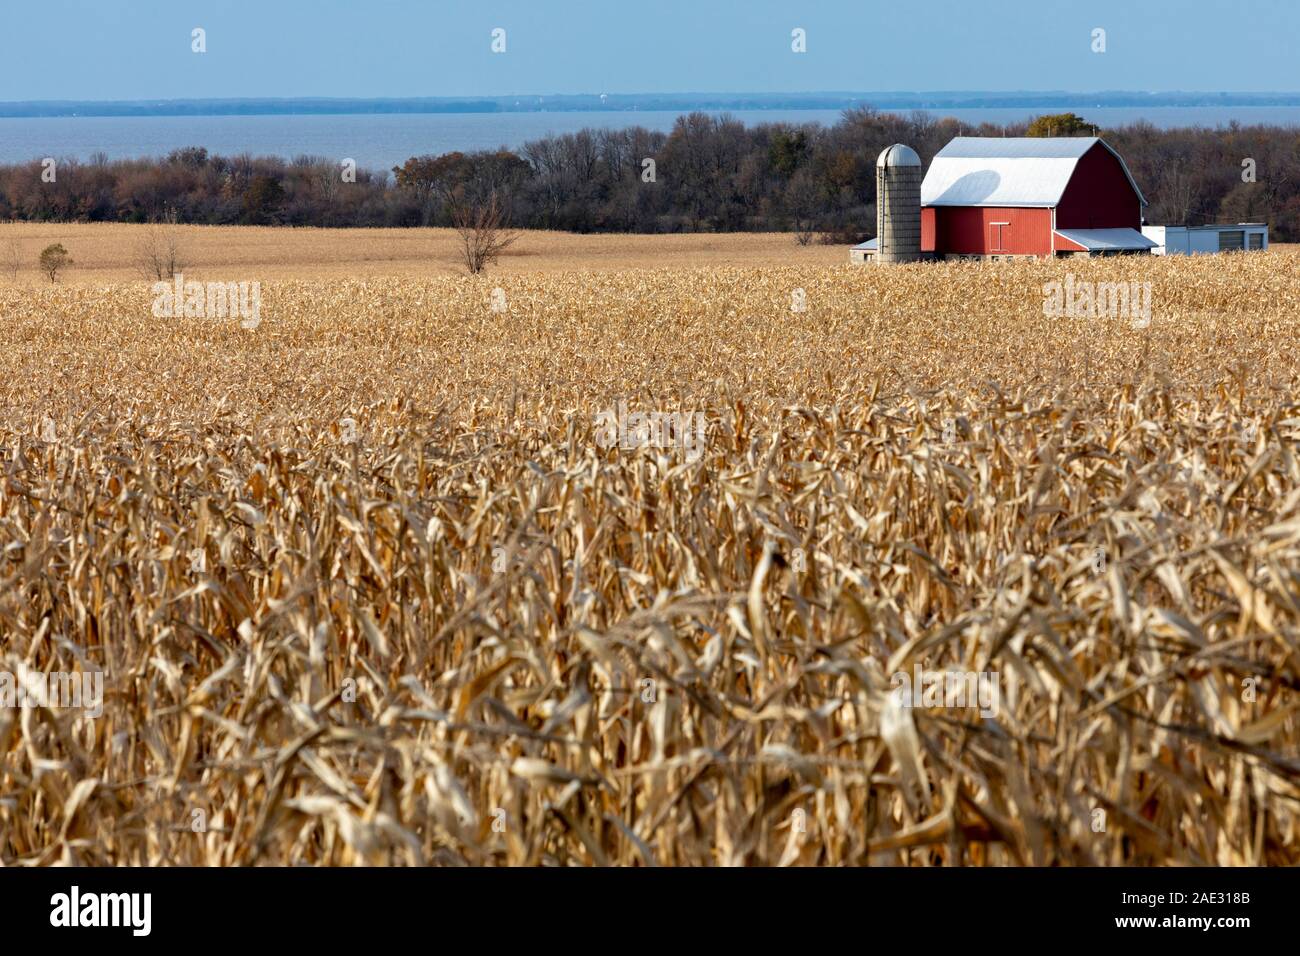 Quinney, Wisconsin - una granja en la orilla del lago Winnebago. Foto de stock